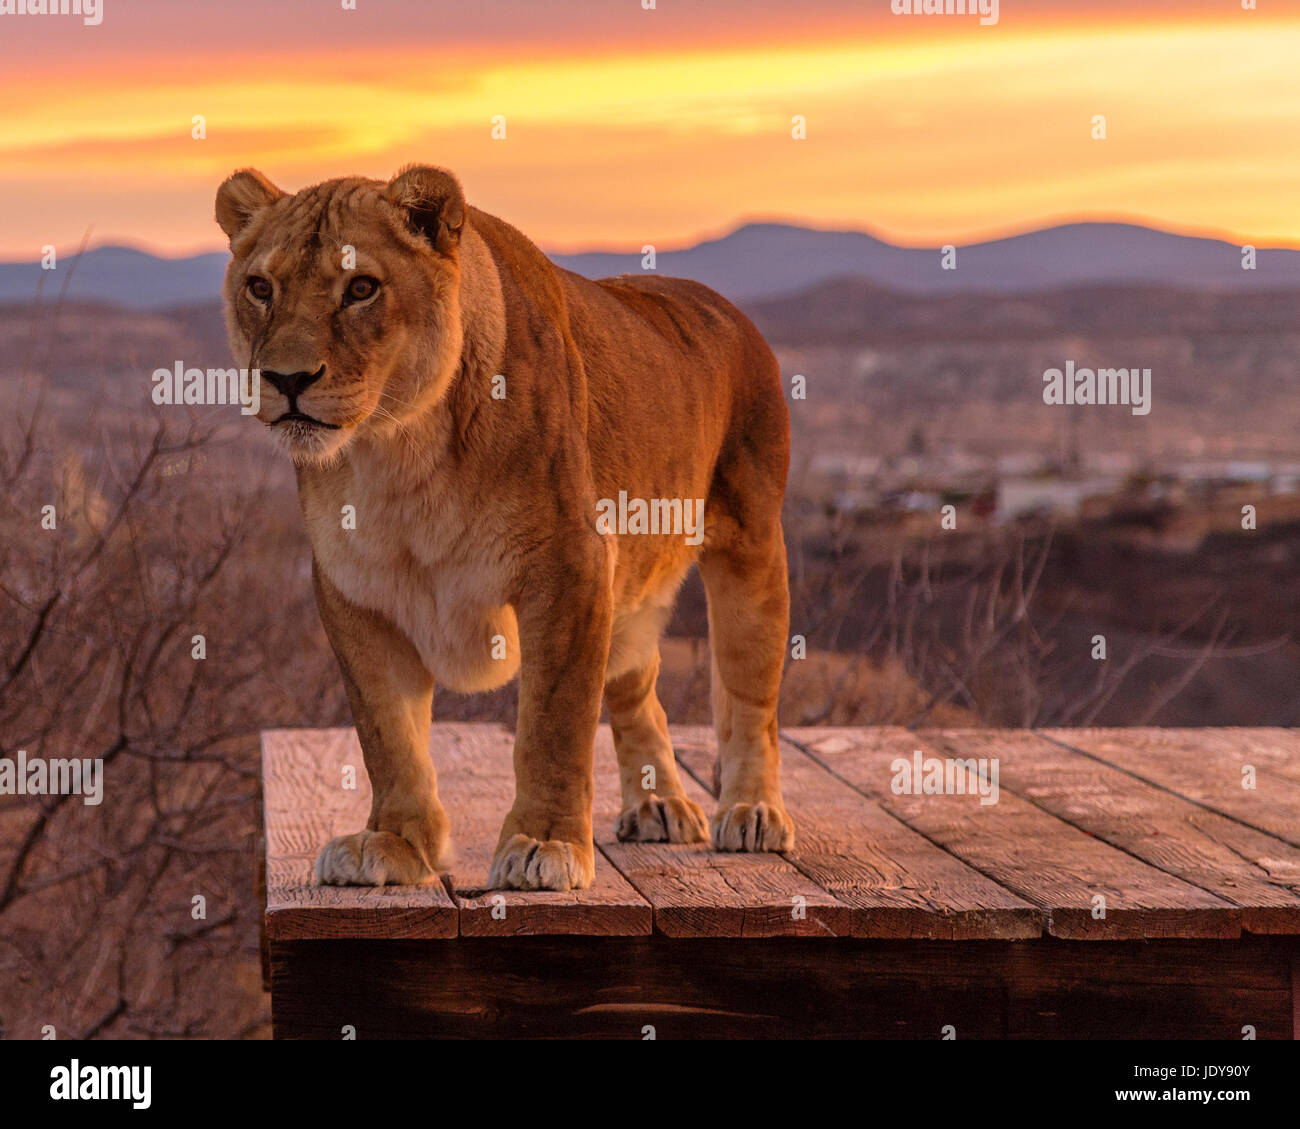 Sunrise Lion Stock Photo